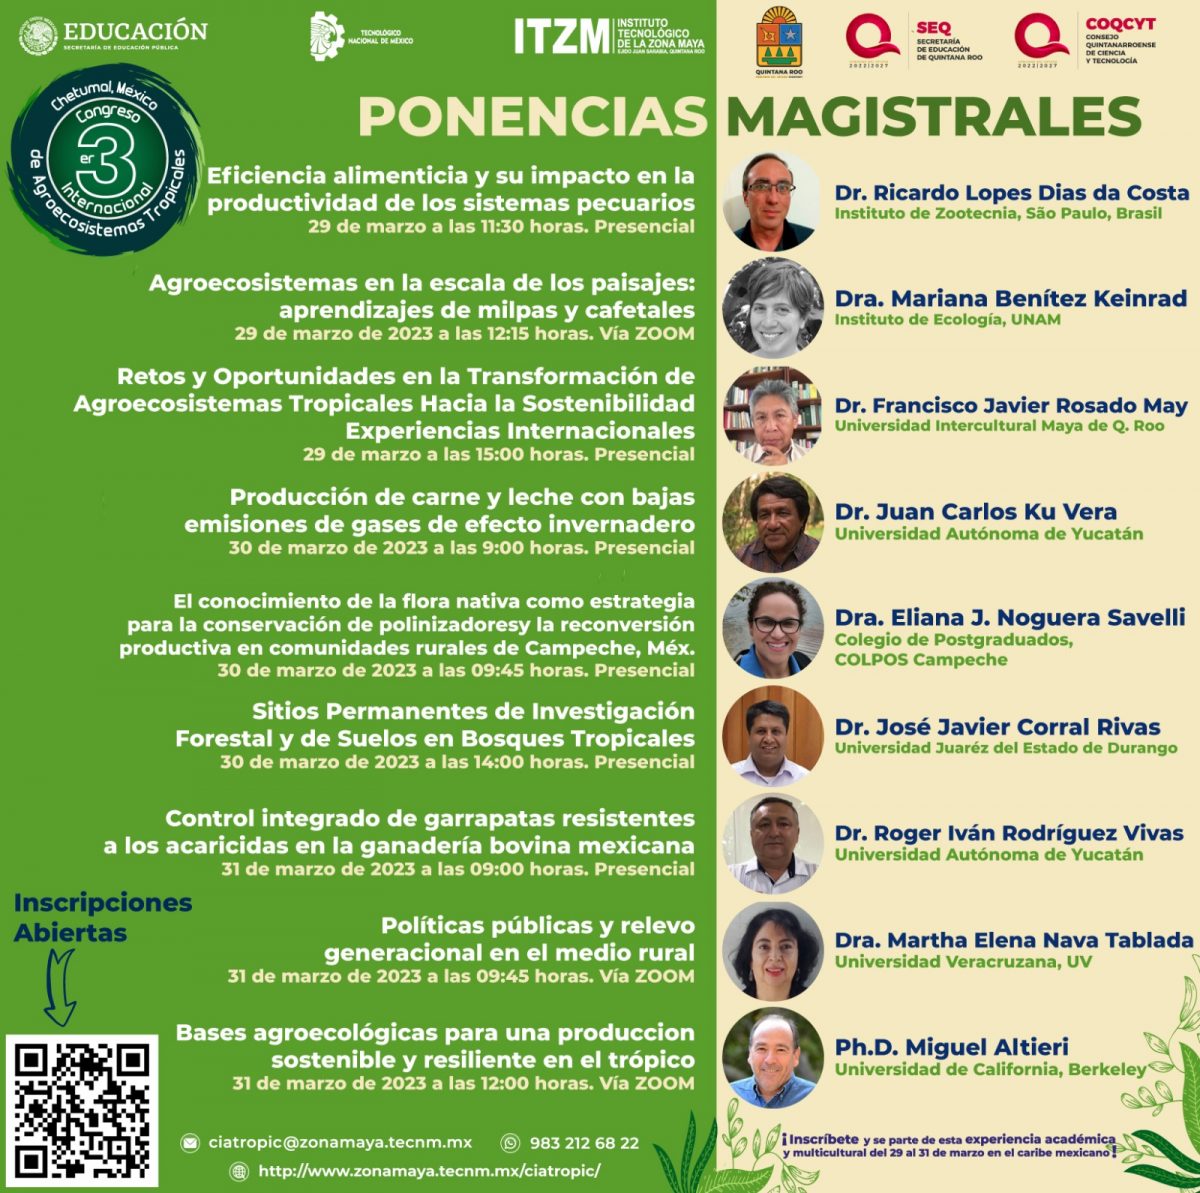 PONENCIAS MAGISTRALES DEL III CONGRESO INTERNACIONAL DE AGROECOSISTEMAS TROPICALES